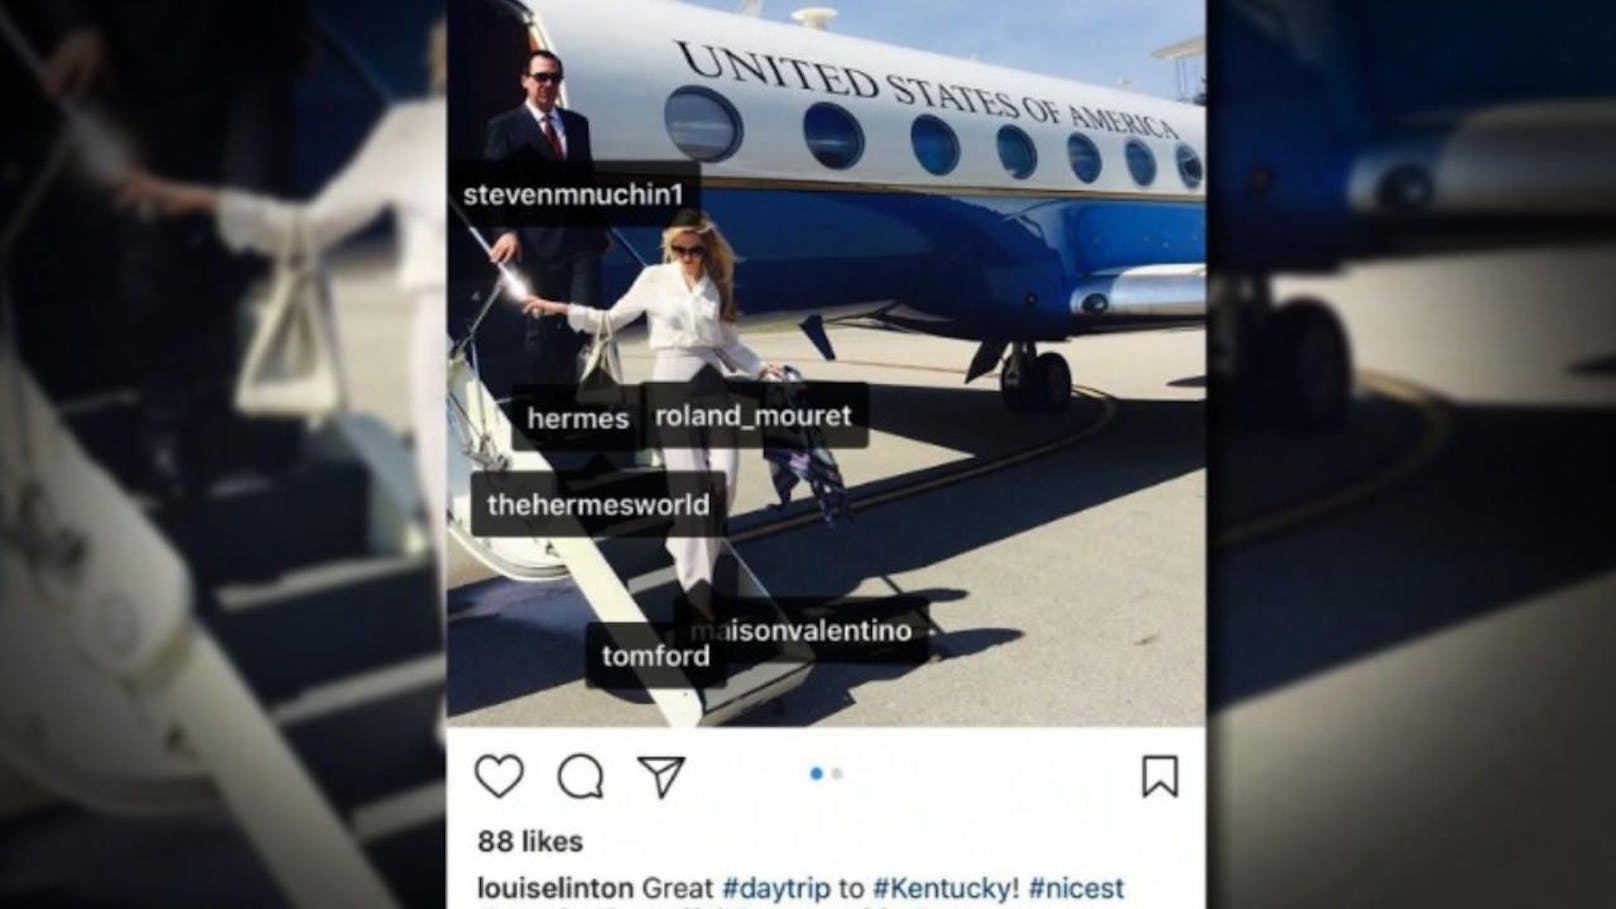 Dumm gelaufen: Louise Linton postet ein Foto von einer Dienstreise und markiert, von welchen Luxus-Designern ihre Ausstattung ist. Folge: Shitstorm! 